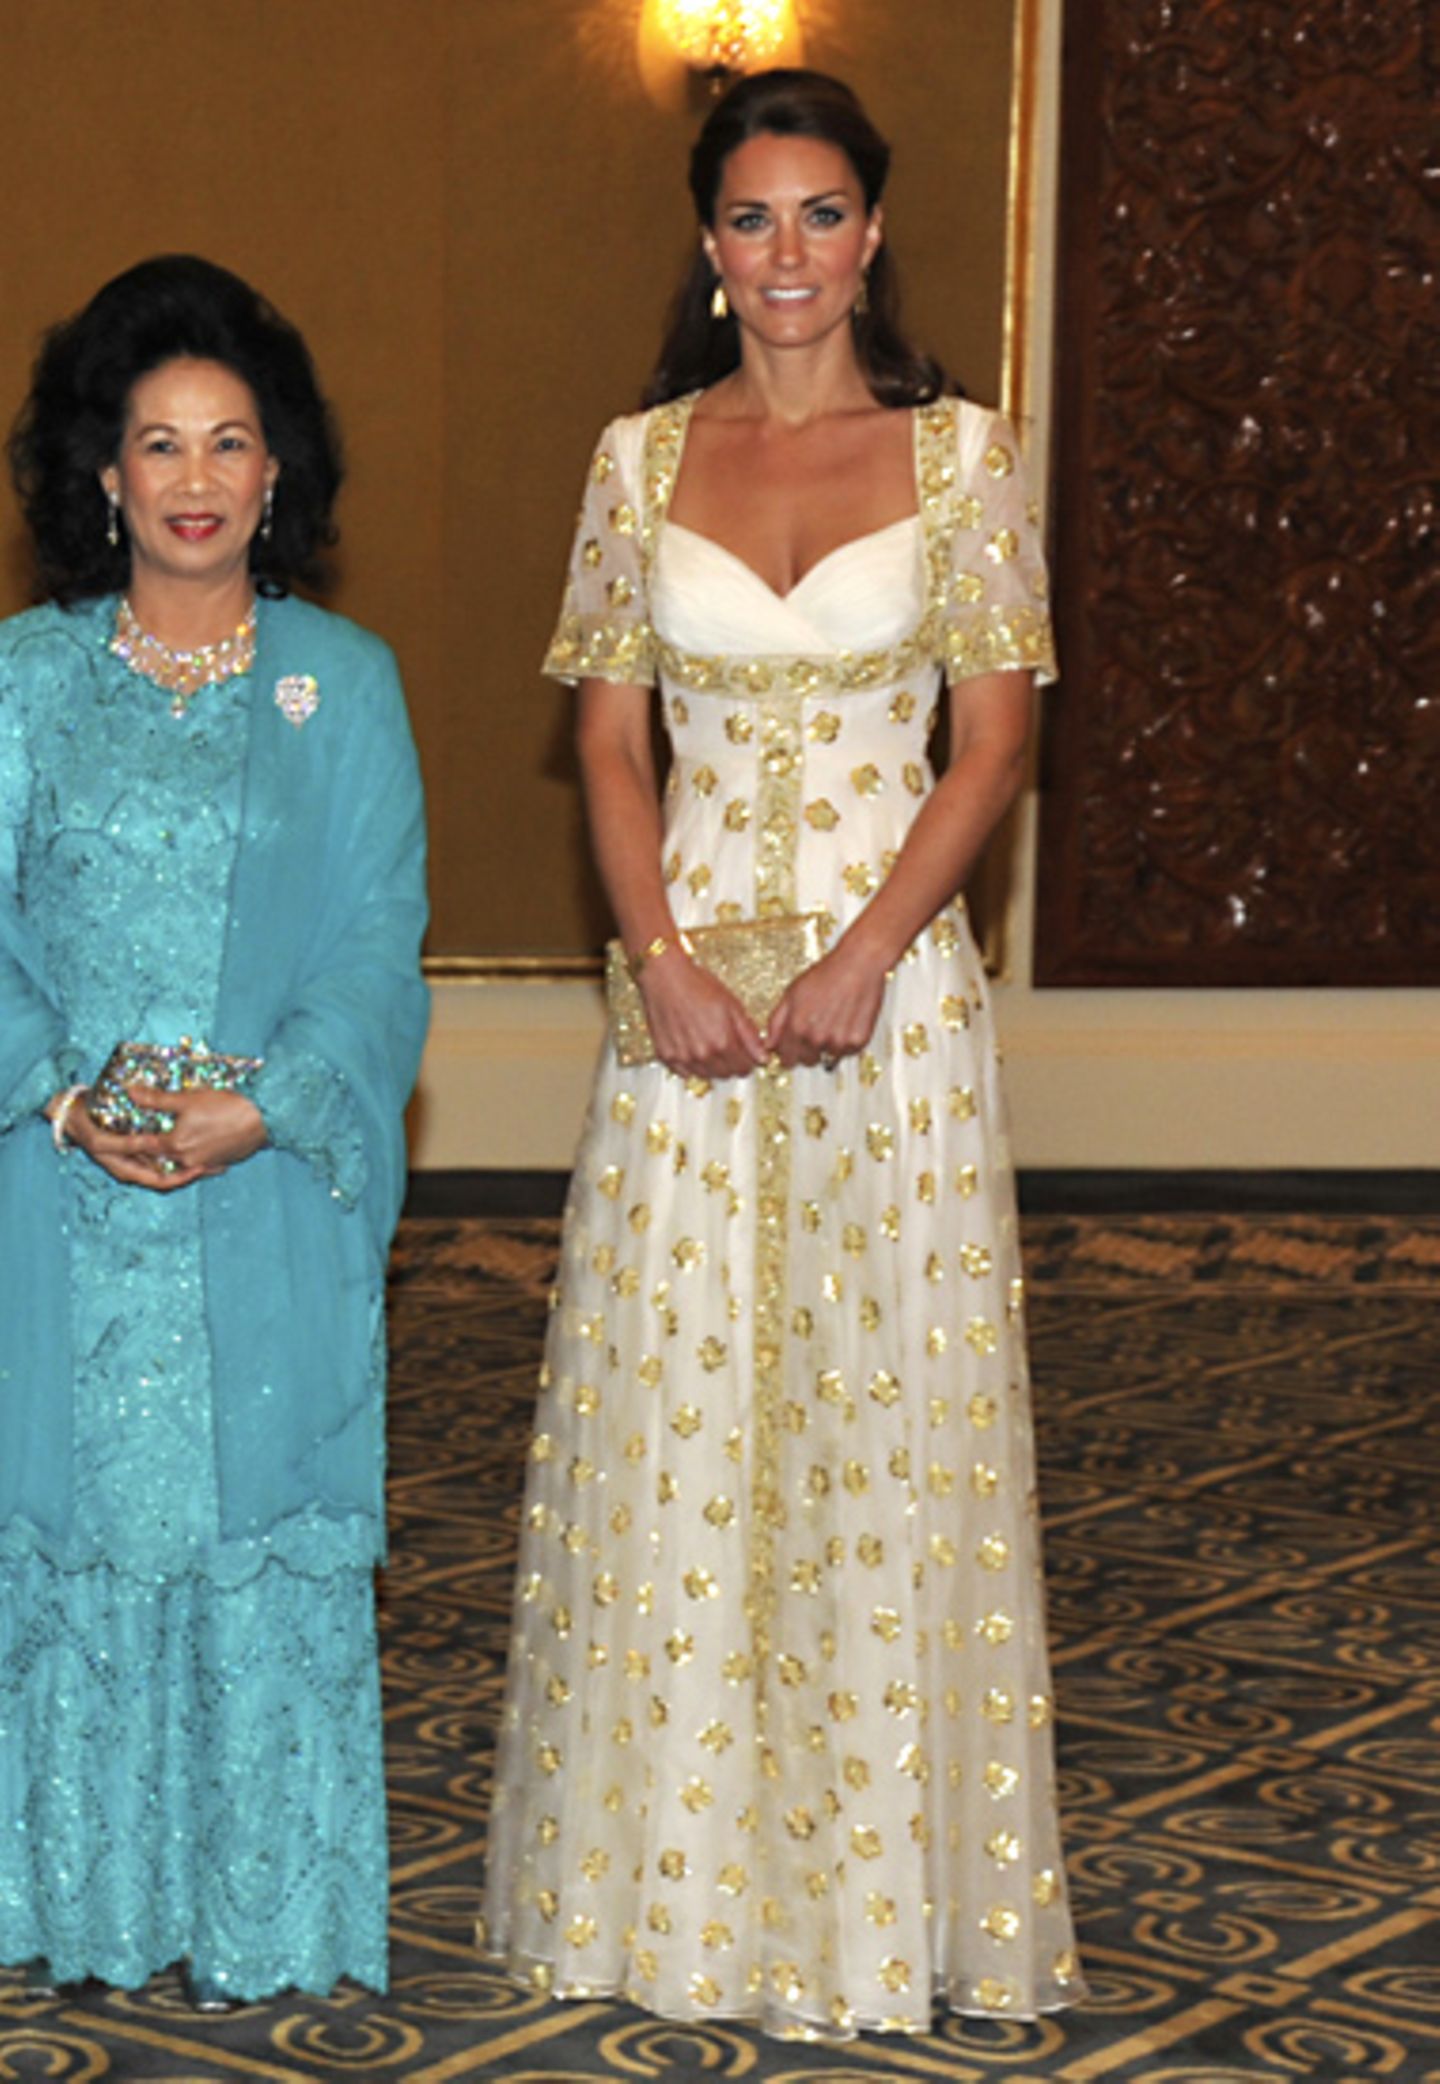 Ein gold-weißes Alexander-McQueen-Kleid hat sich Catherine für das Staatsbankett in Malaysia ausgesucht.